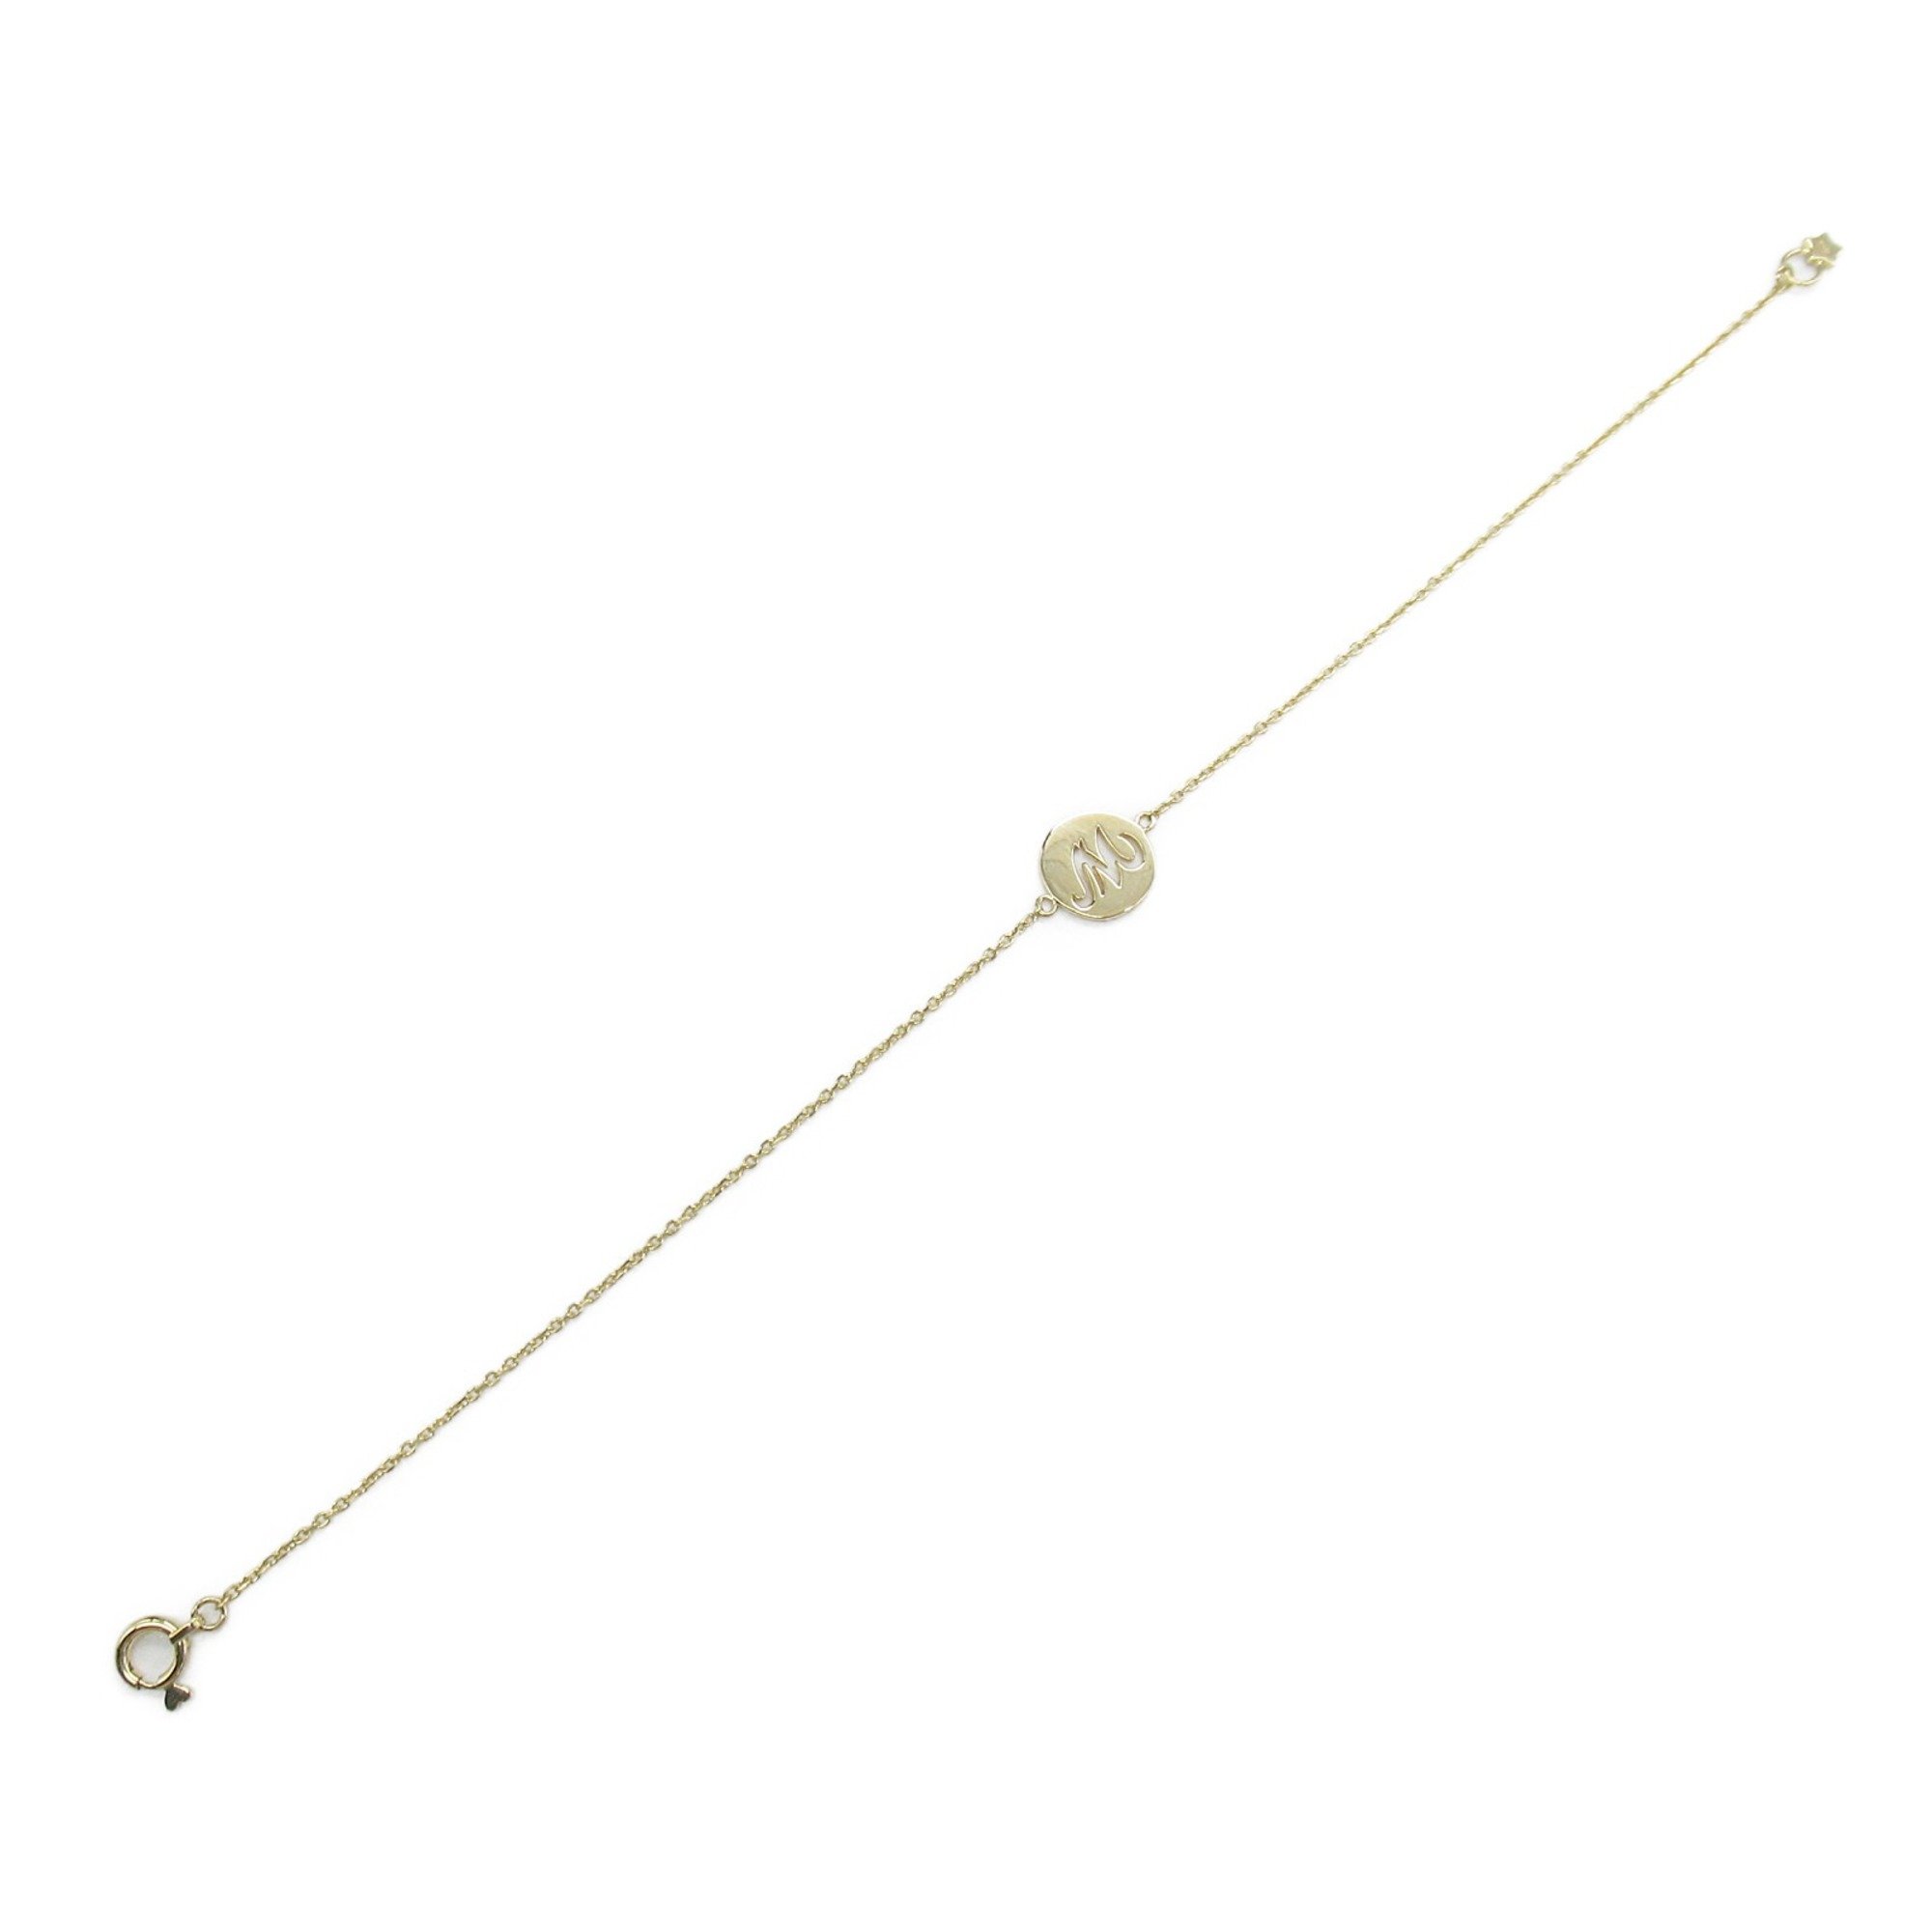 STAR JEWELRY Bracelet Gold K18 (Yellow Gold)